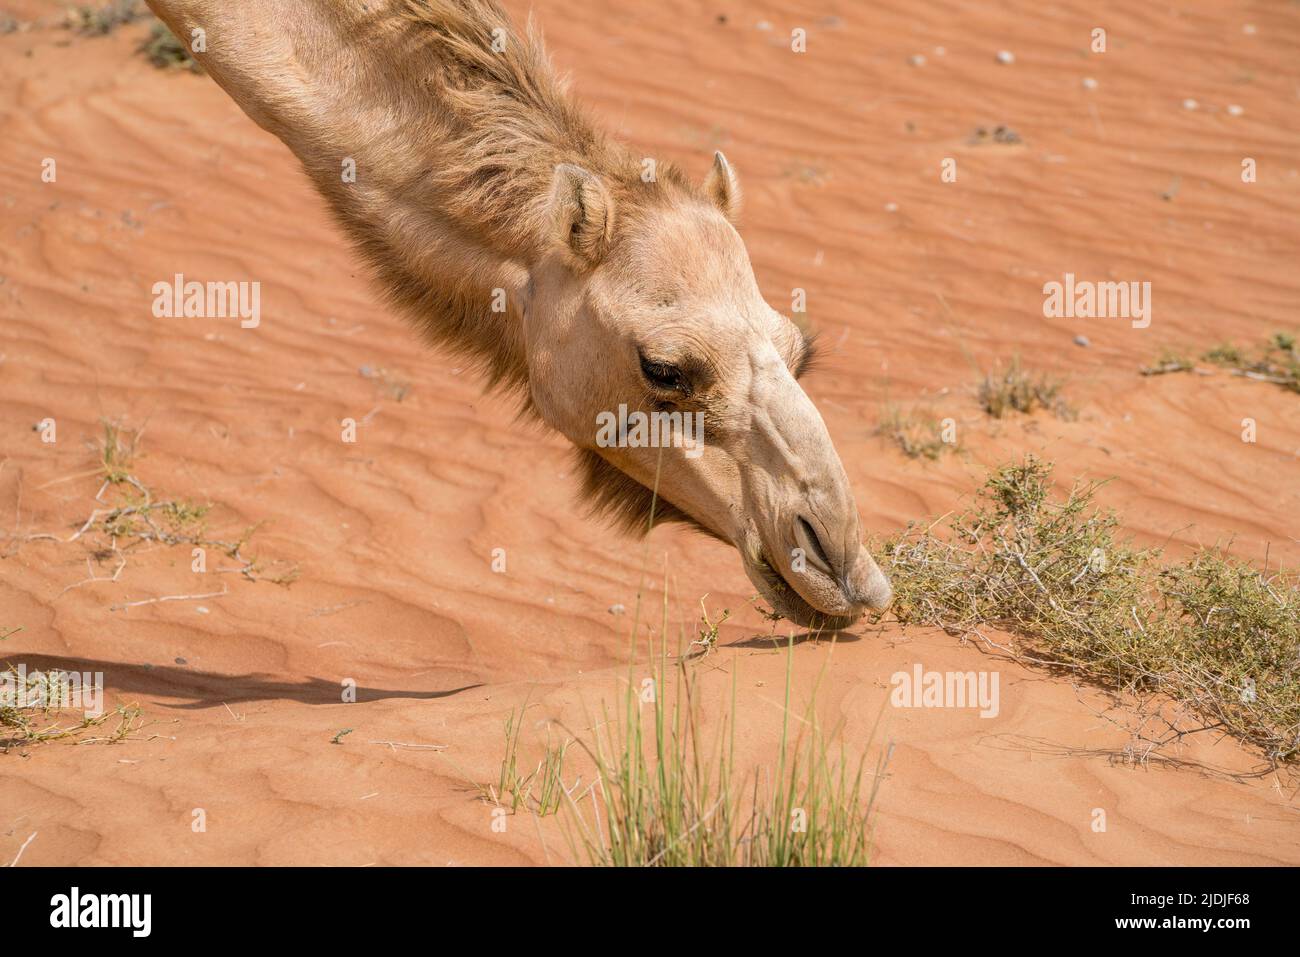 Dettaglio di testa e collo di arabo, o anche dromedario cammello che si nutrono su cespugli in una giornata calda nel deserto di Wahiba Sands, Oman. Deserto maestoso a Foto Stock